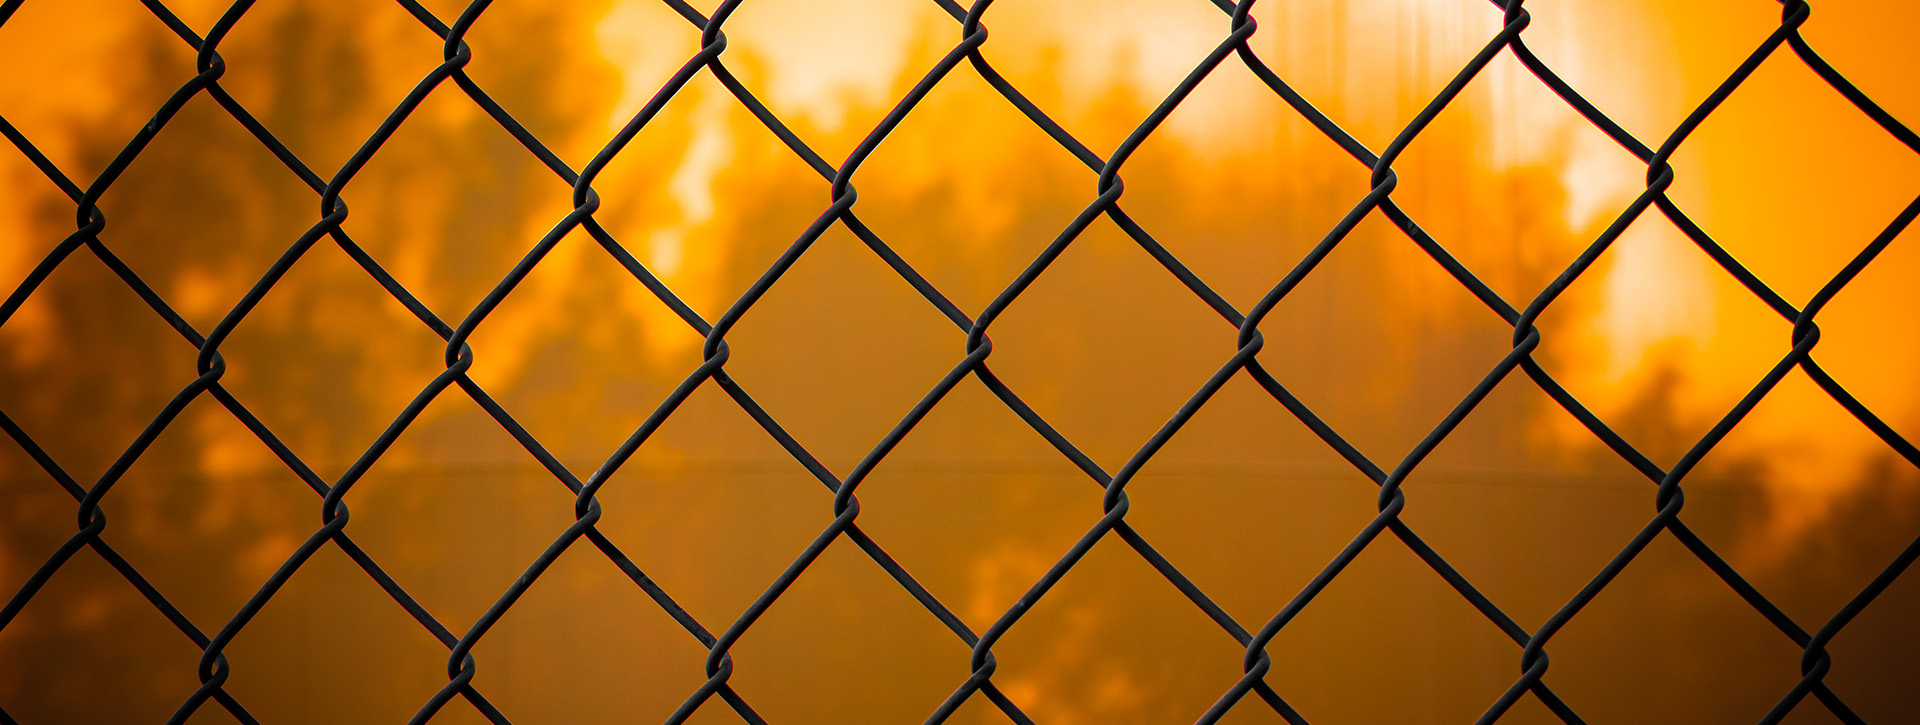 Come realizzare una recinzione: tutorial e consigli - GDE